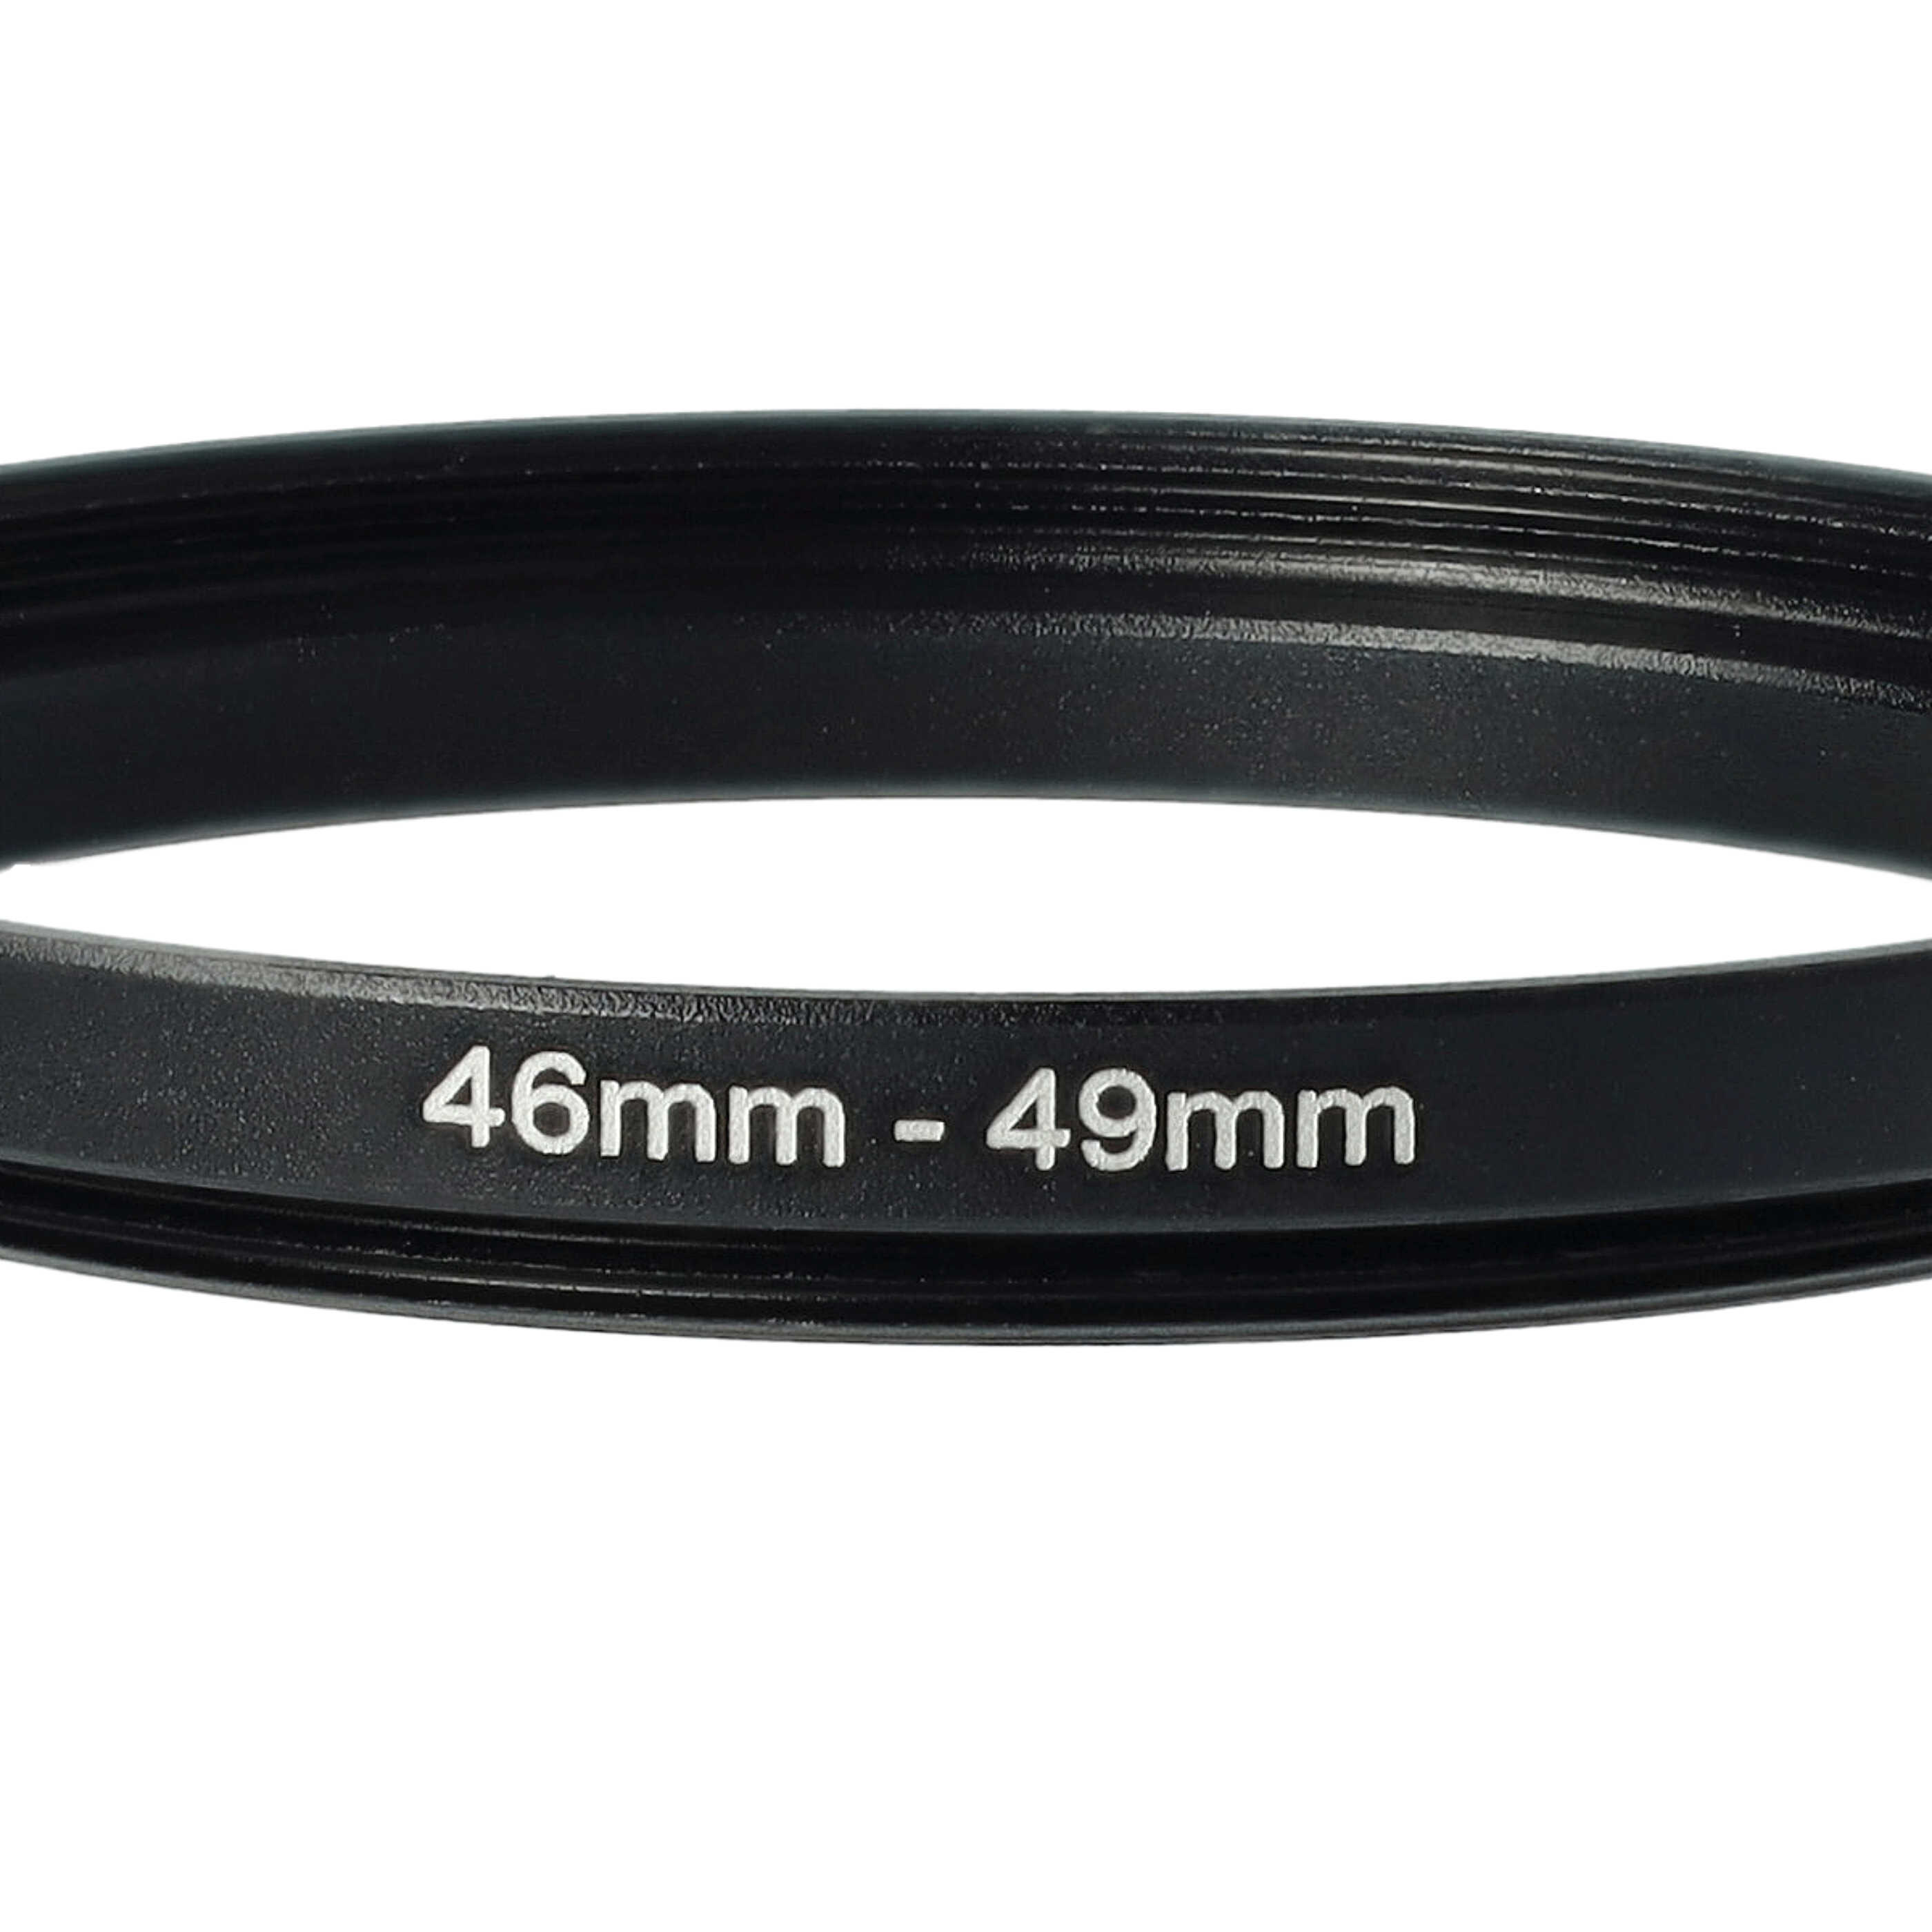 Step-Up-Ring Adapter 46 mm auf 49 mm passend für diverse Kamera-Objektive - Filteradapter